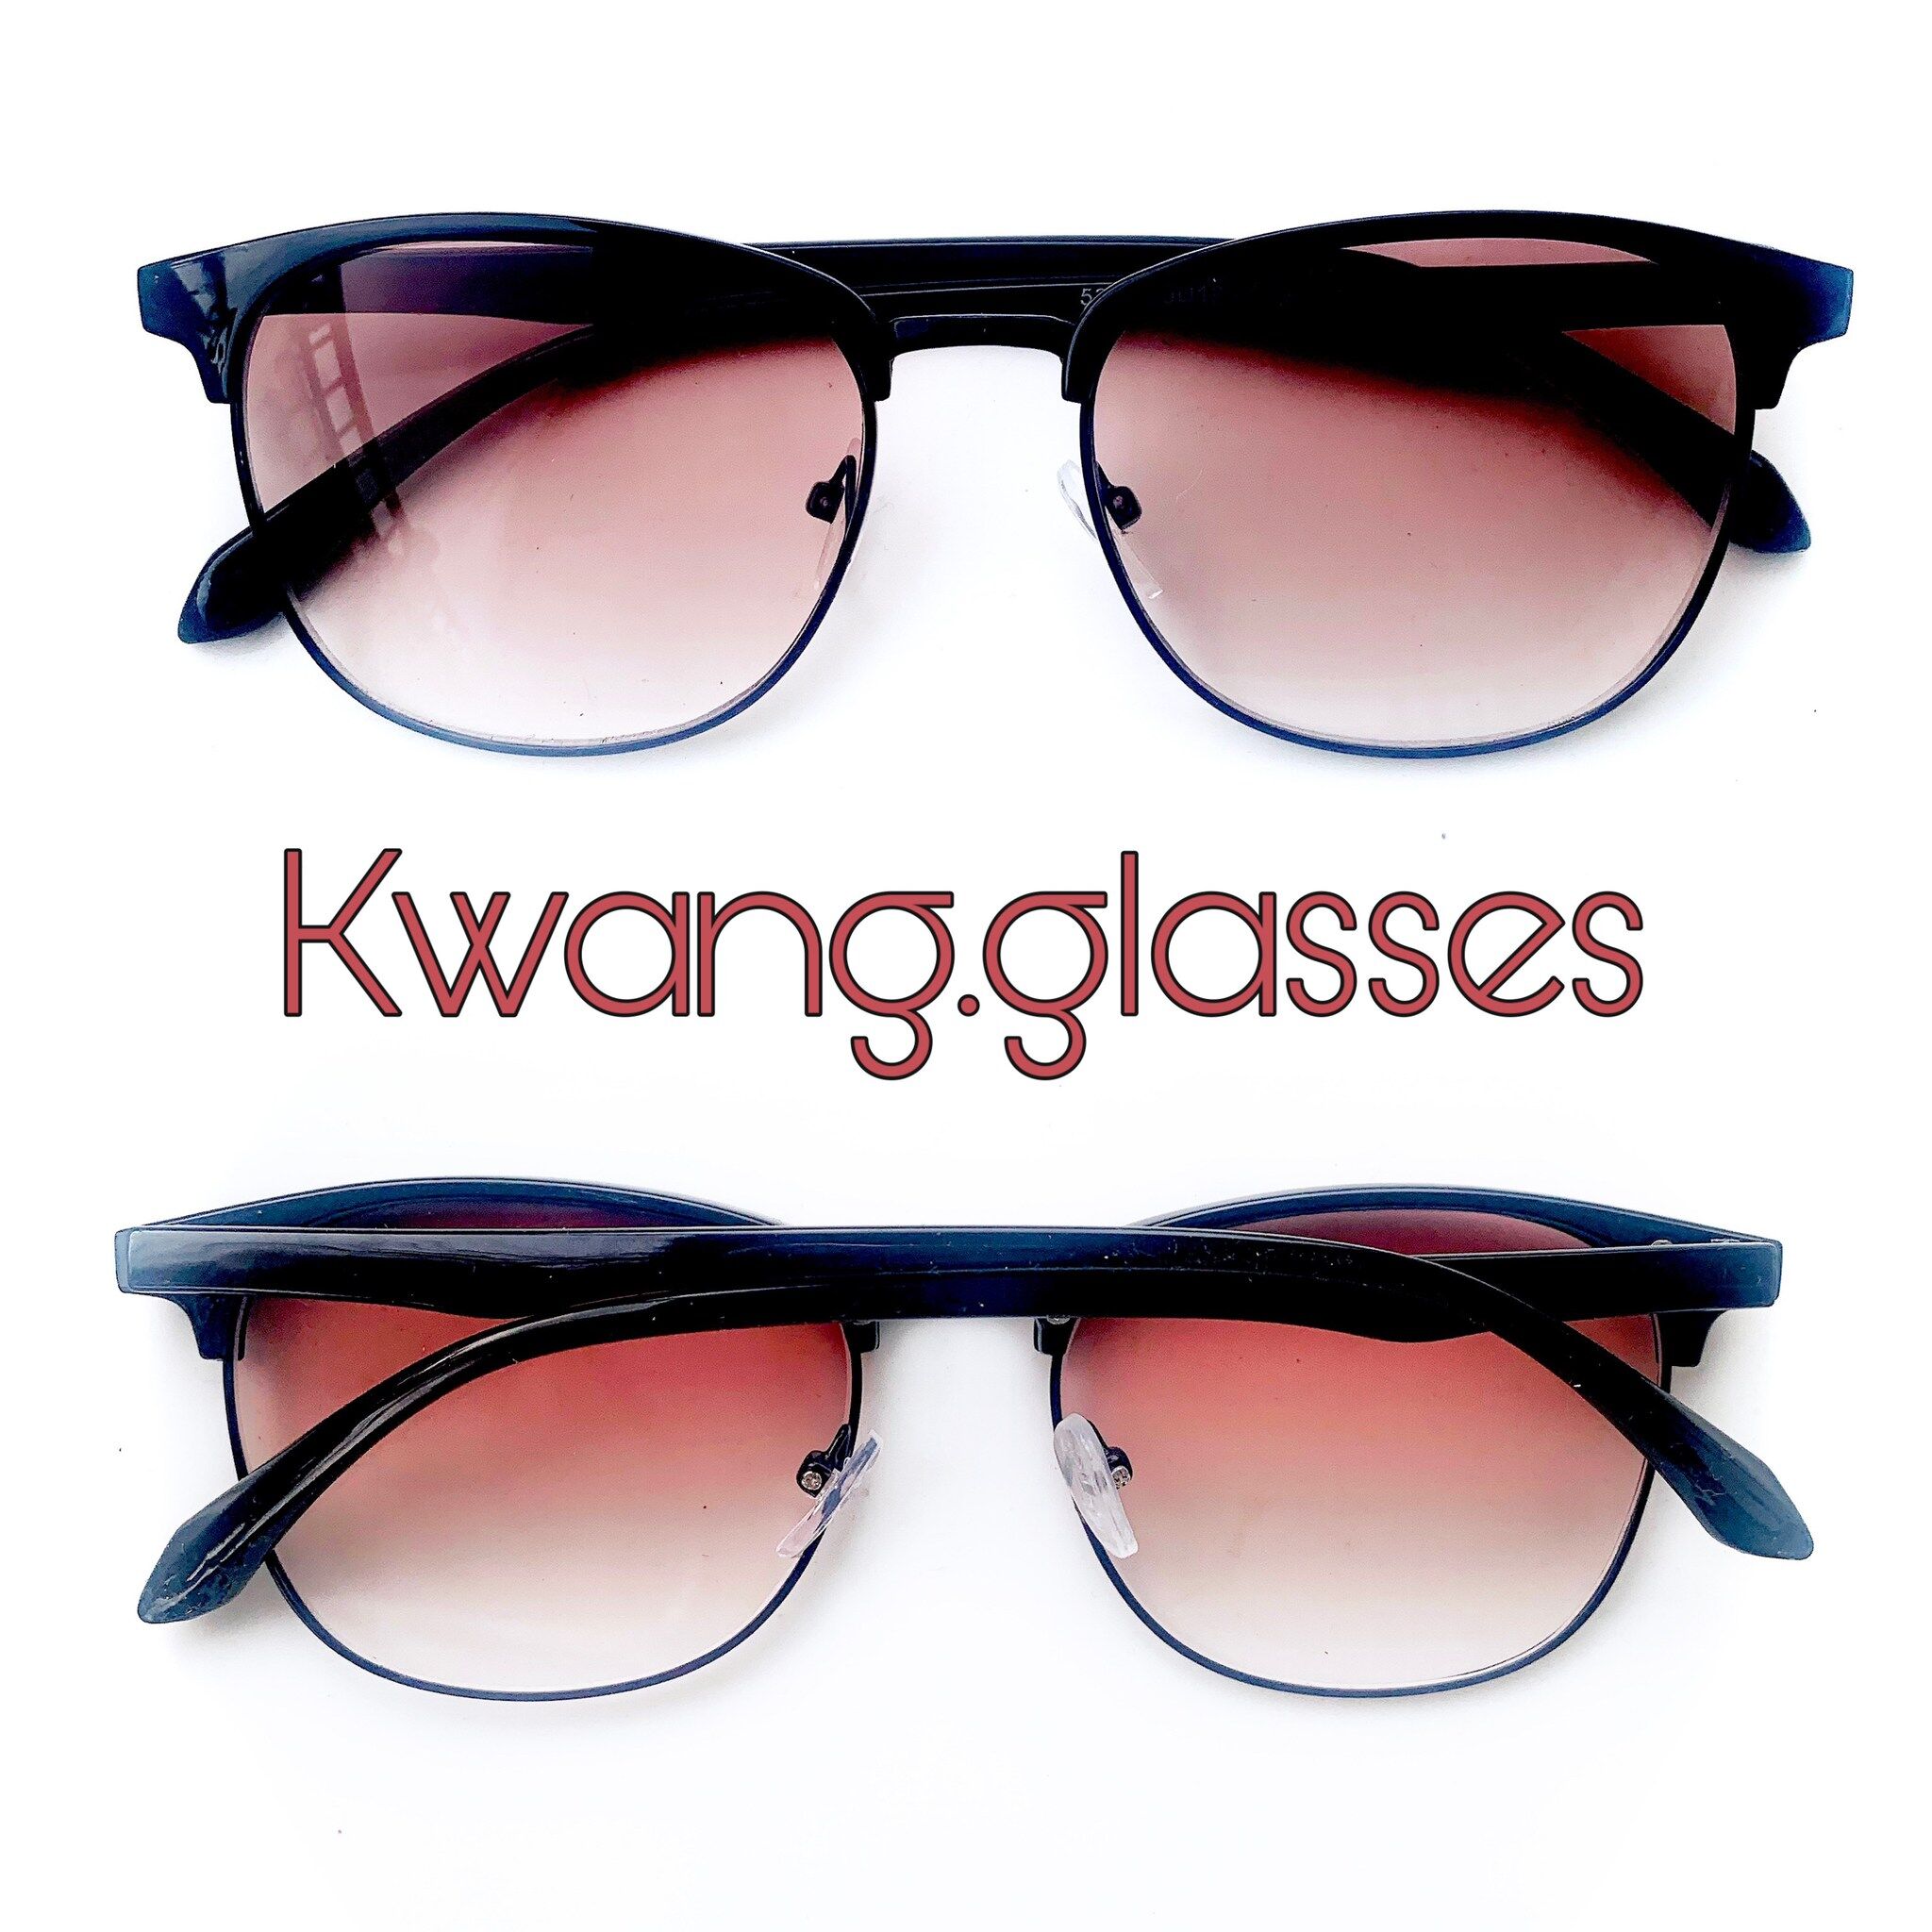 แว่นสายตายาว เลนส์สายตากันแดด Black Pantos two tone มีตั้งแต่เลนส์ 50 ถึง 400 กดเลือกเลนส์ที่ตัวเลือกสินค้า แว่นตาสายตายาว กดติดตาม แว่นตา Kwang.glasses